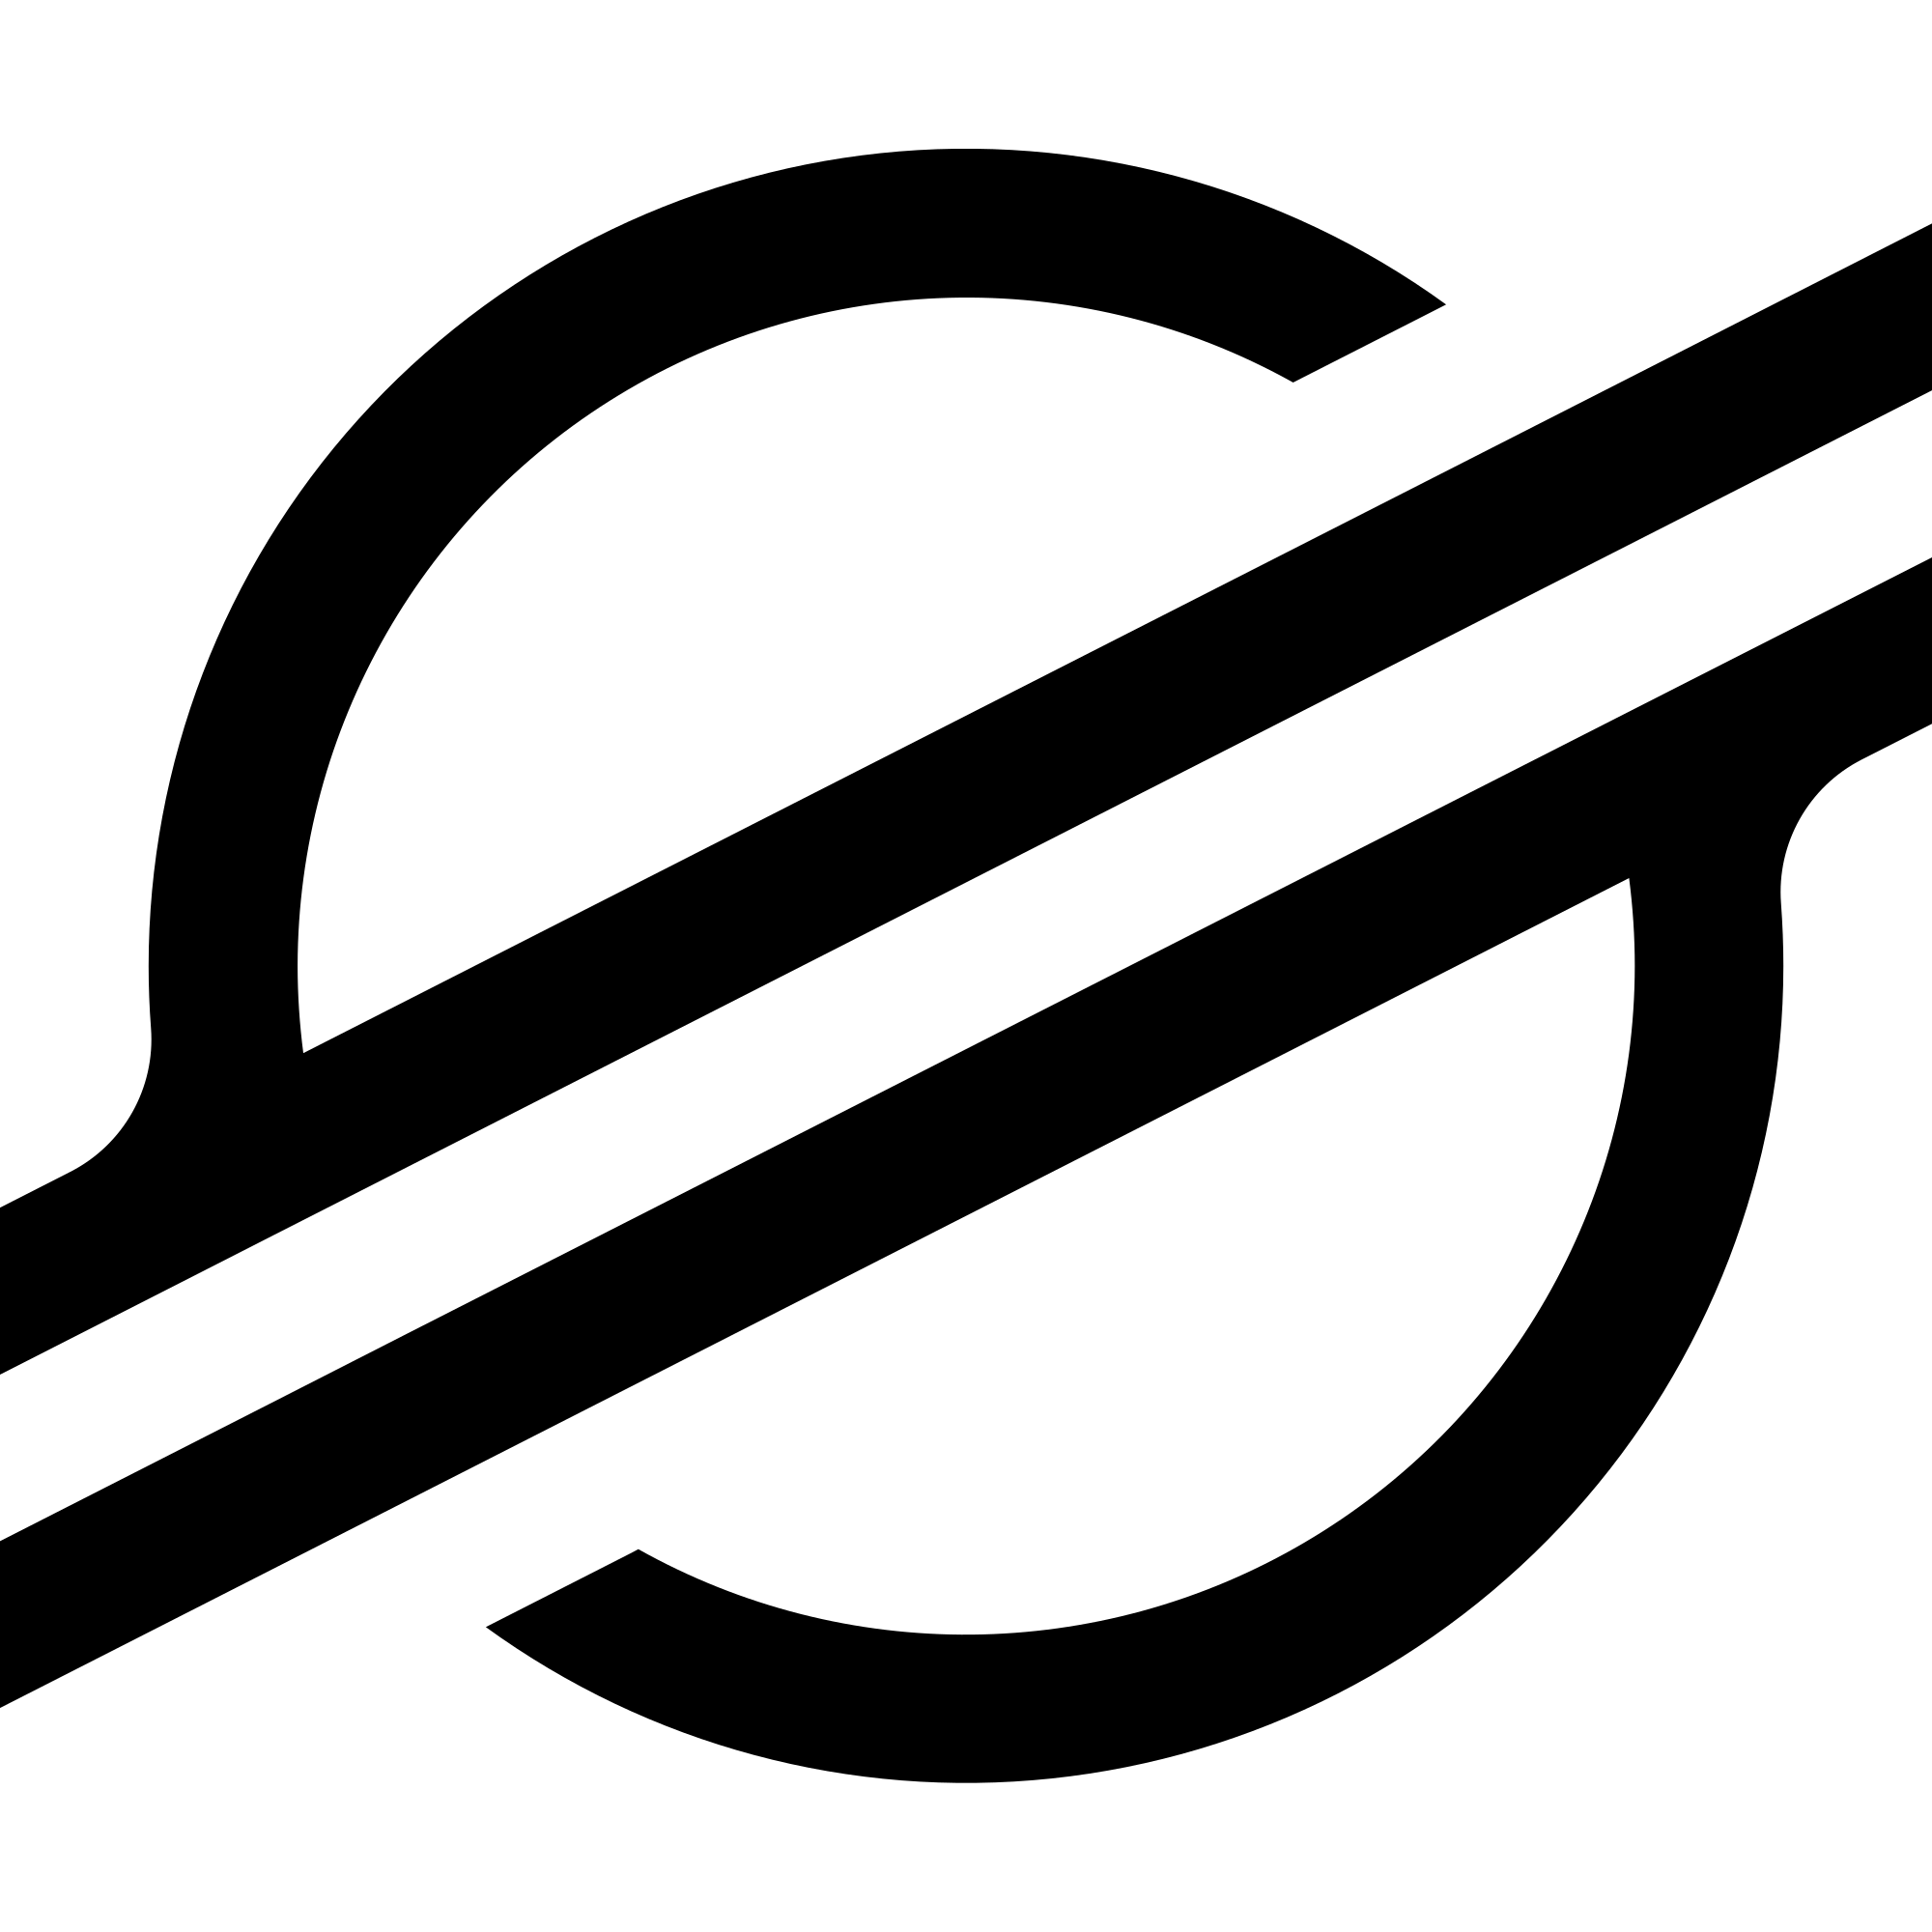 Descarga de archivos .SVG y .PNG del logotipo estelar (XLM)